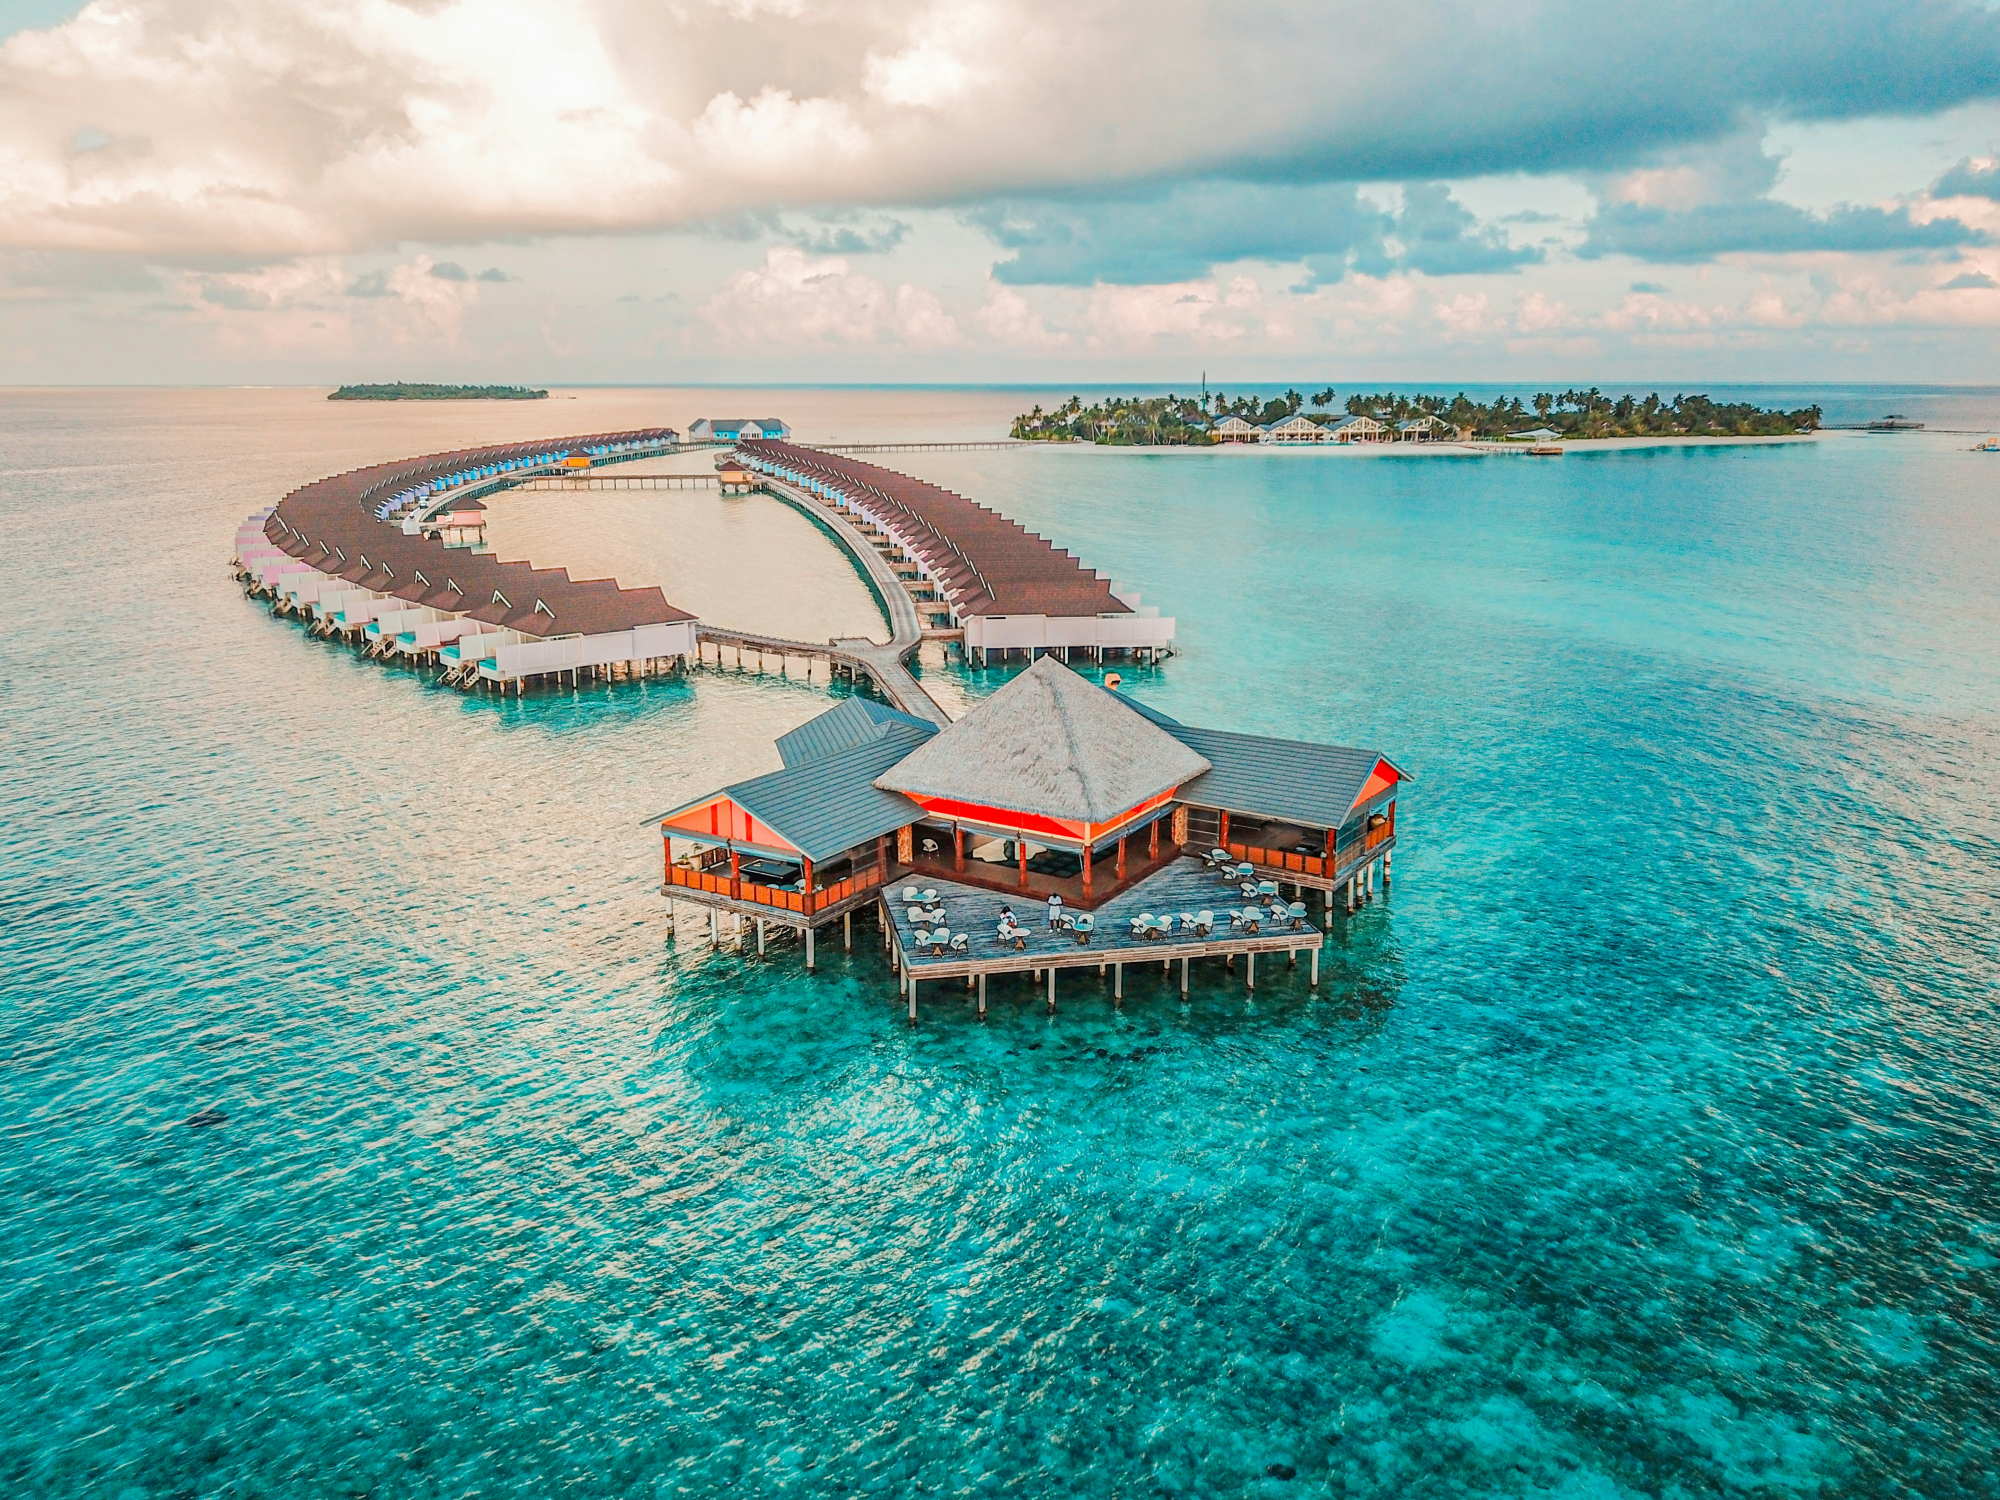 découvrez les merveilles des maldives, un archipel paradisiaque aux plages de sable blanc, aux eaux cristallines et à la biodiversité marine exceptionnelle.